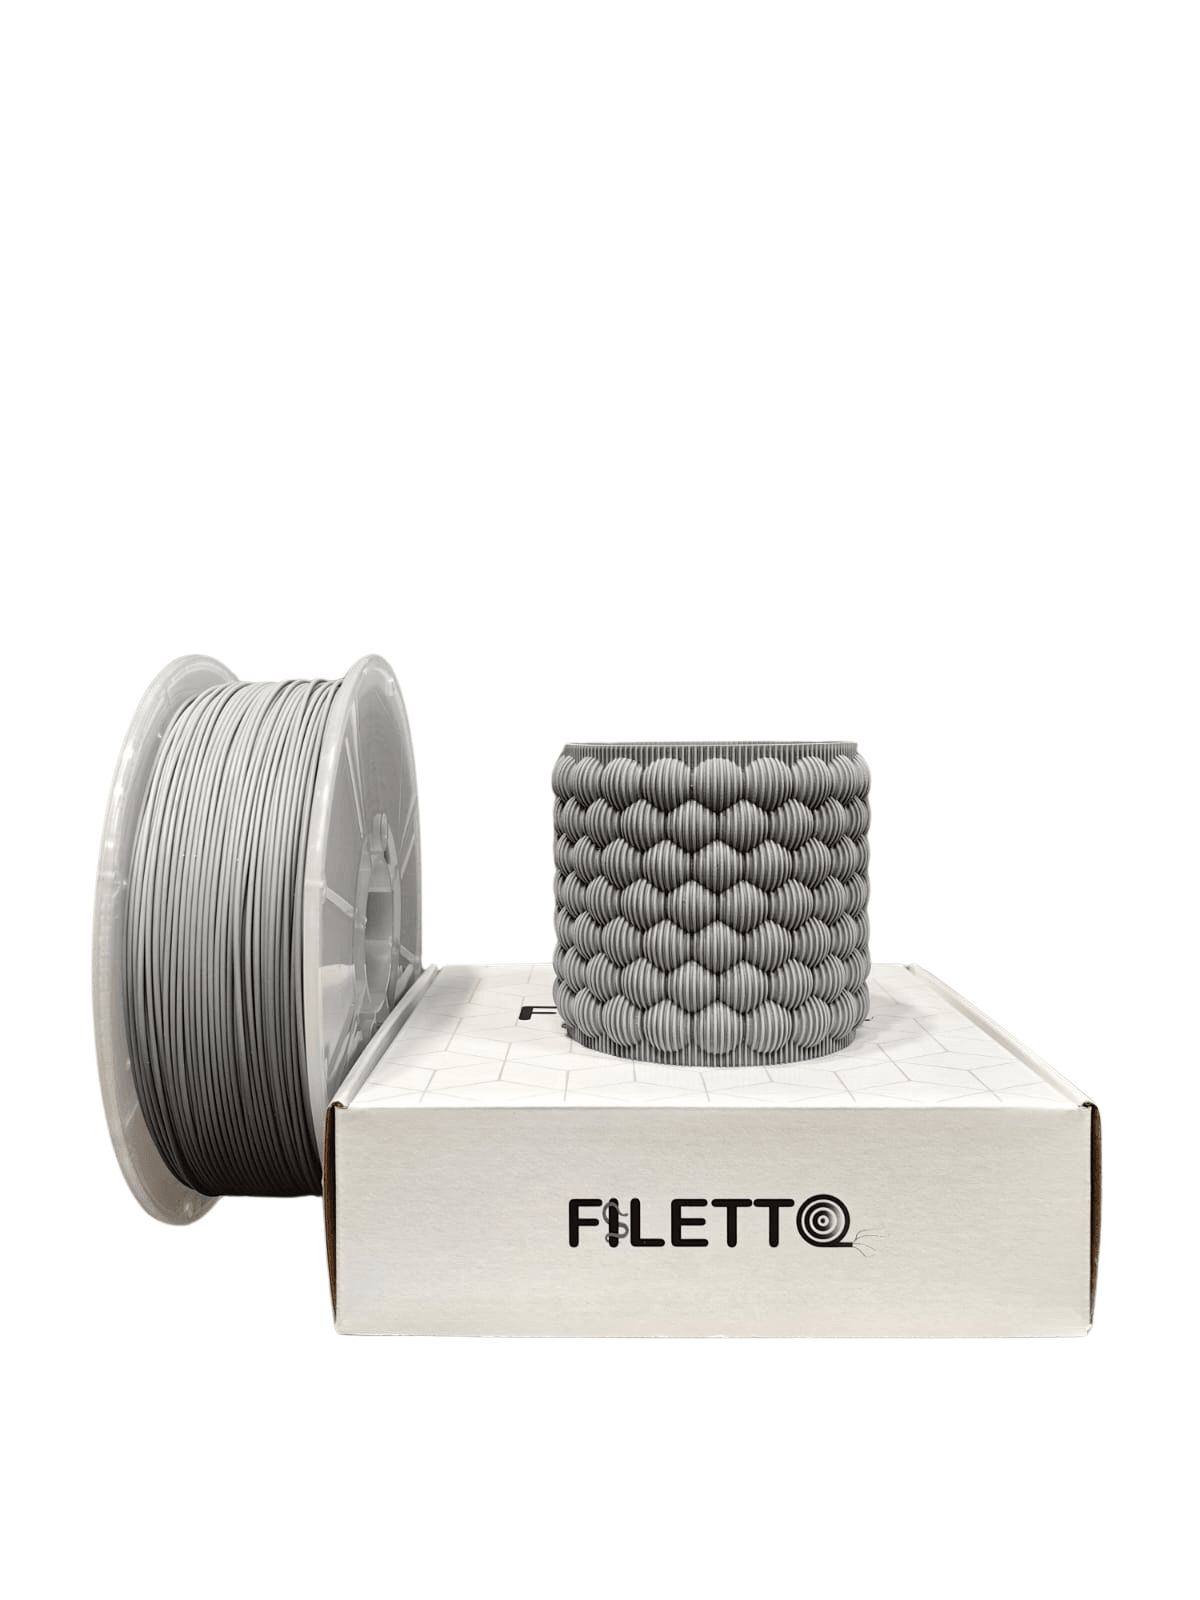 Filetto Pla+ Filament 1.75mm 1 KG - Gri